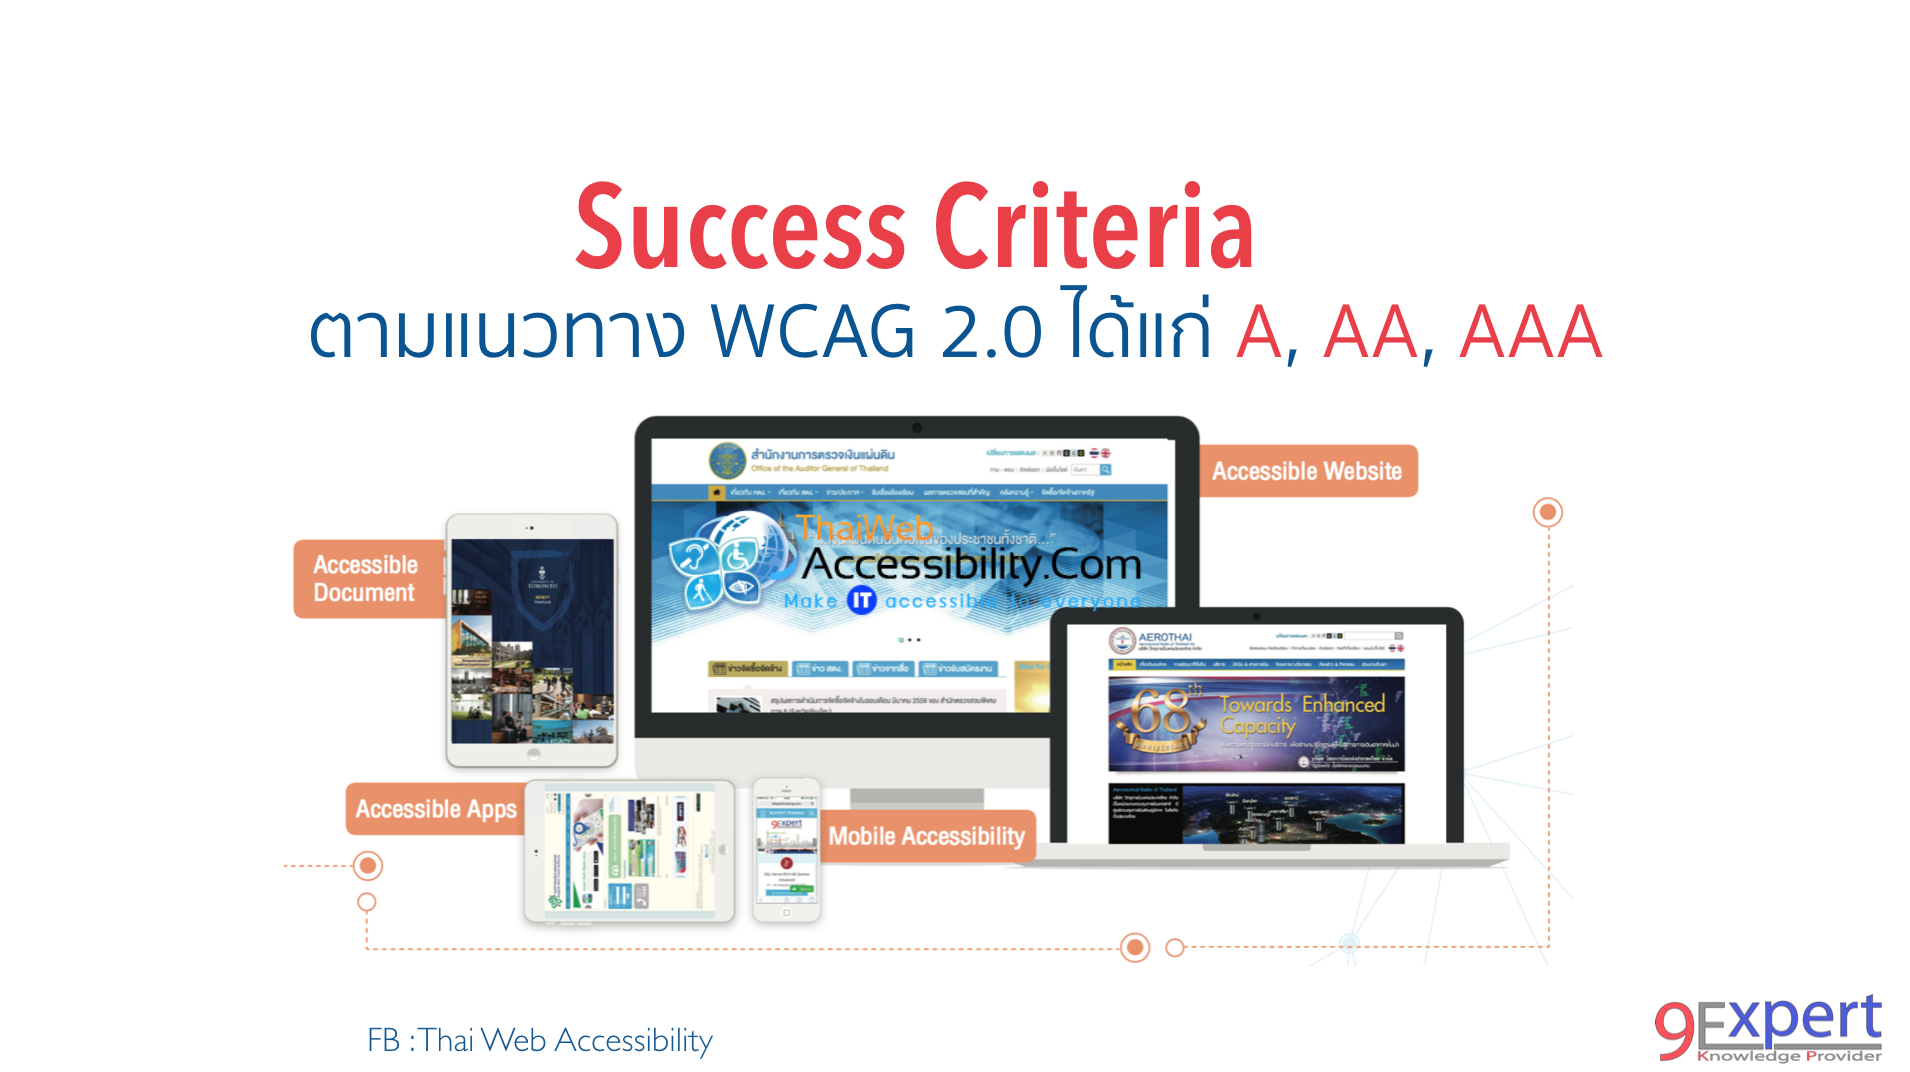 เกณฑ์ความสำเร็จ ของ WCAG 2.0